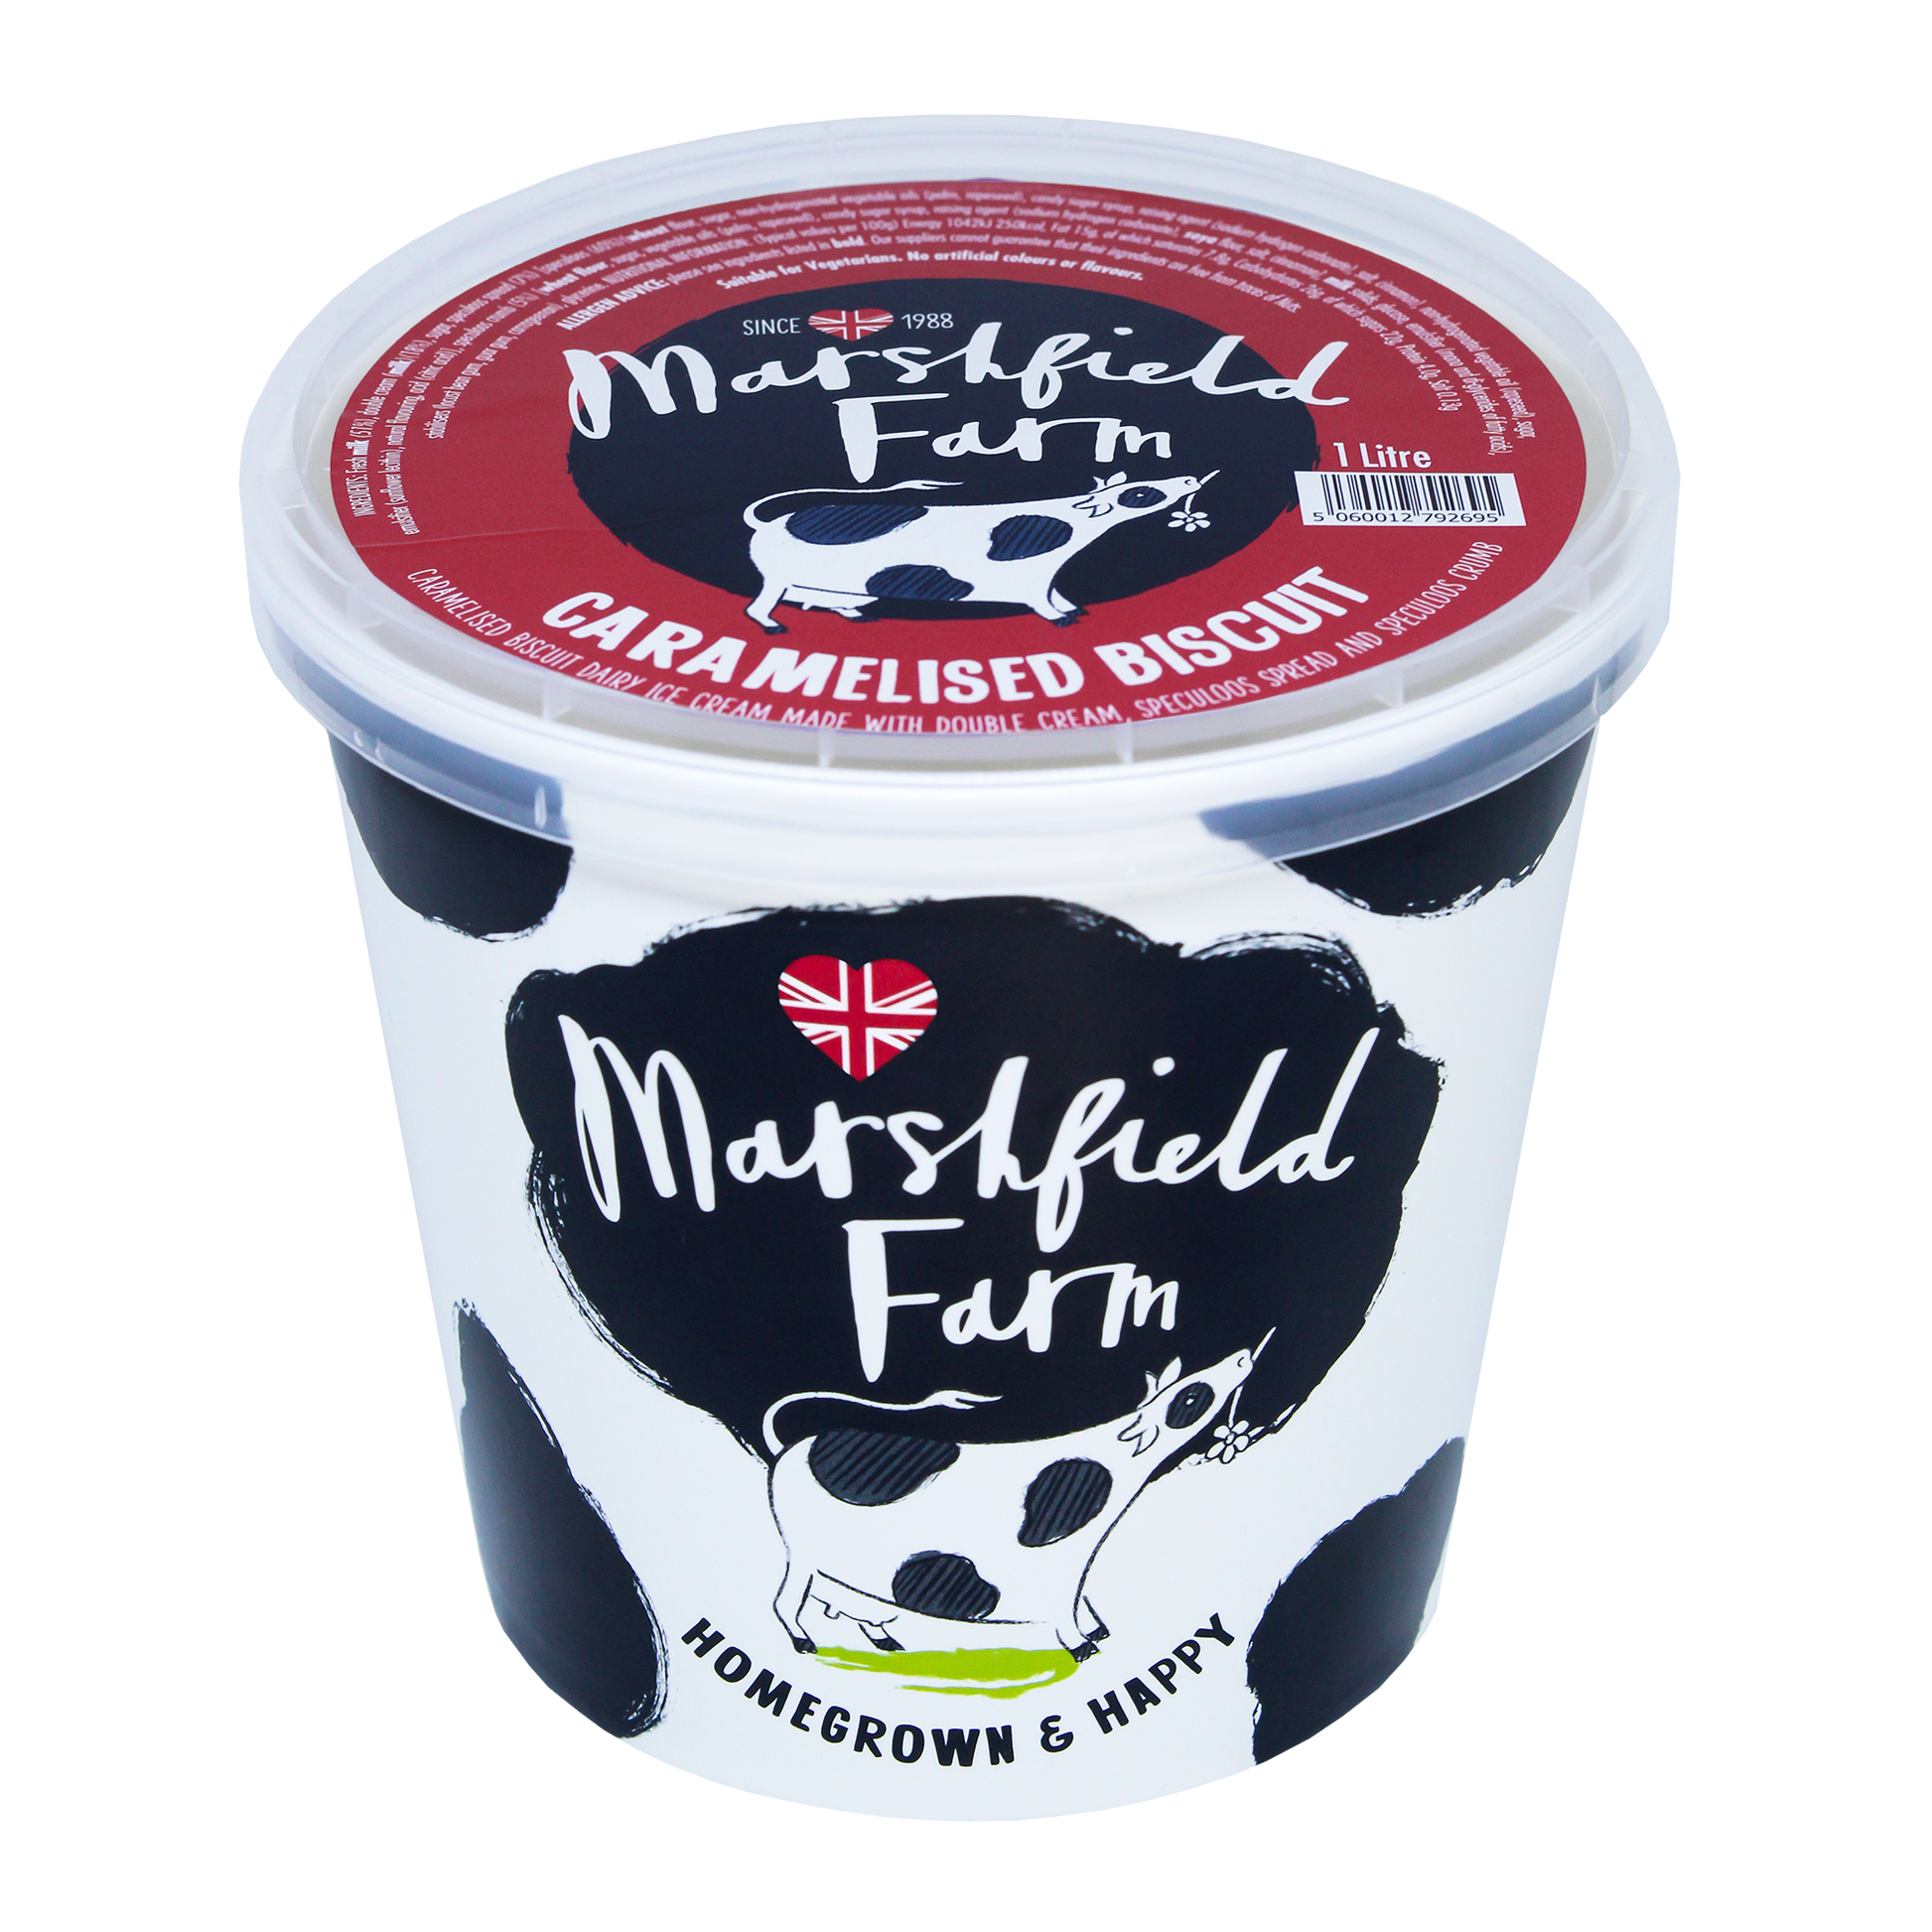 Marshfield Farm Caramelised Biscuit Ice Cream 1 Litre Tub